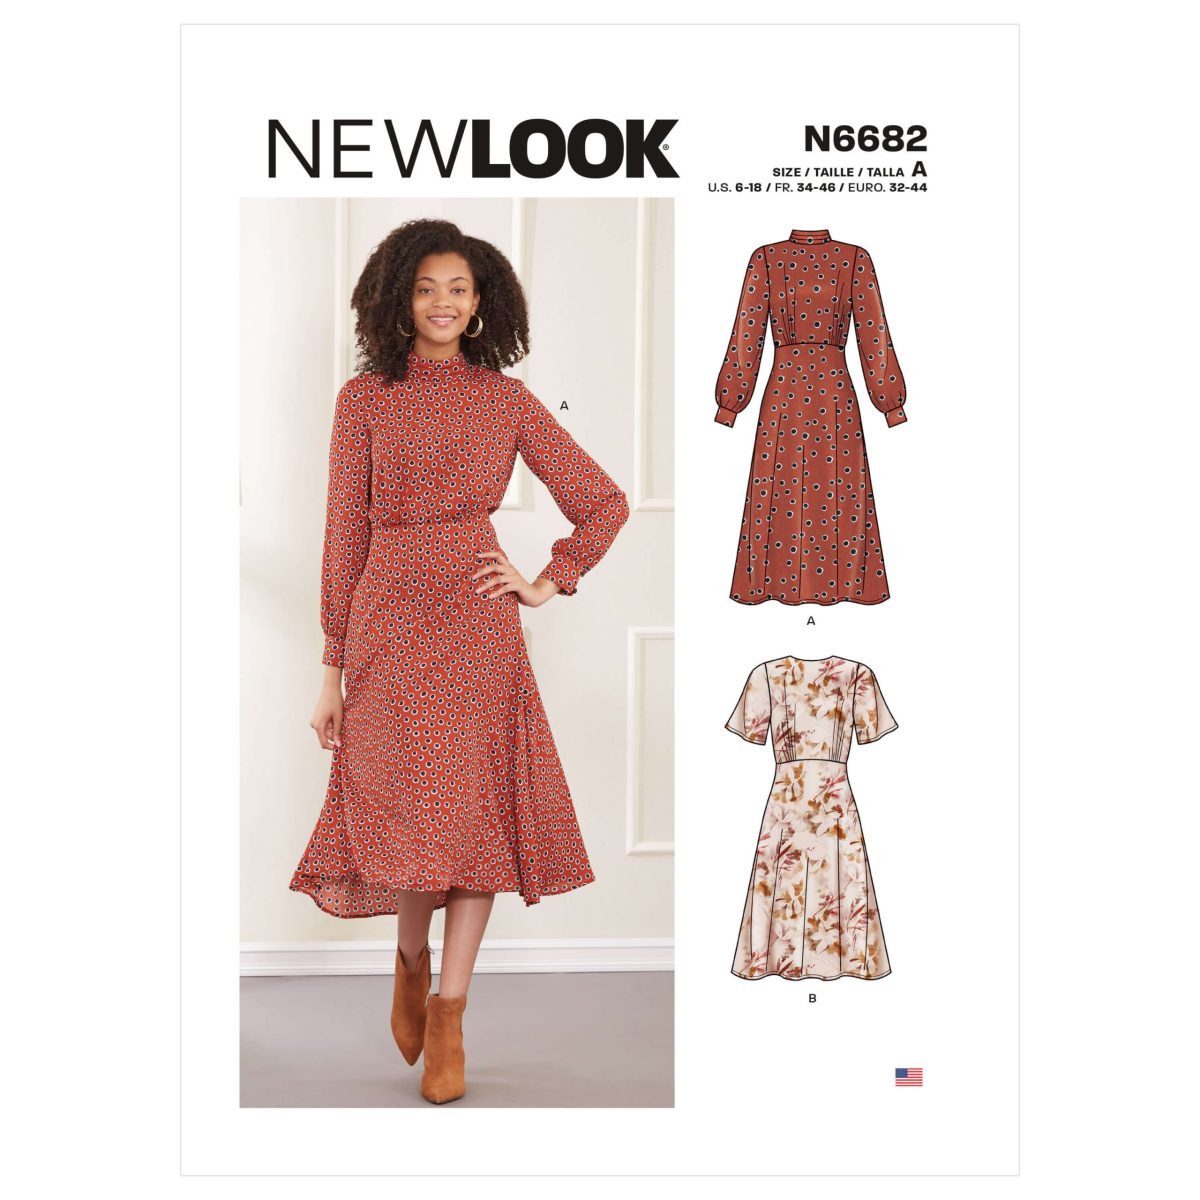 New Look Sewing Pattern N6682 Misses' Dress